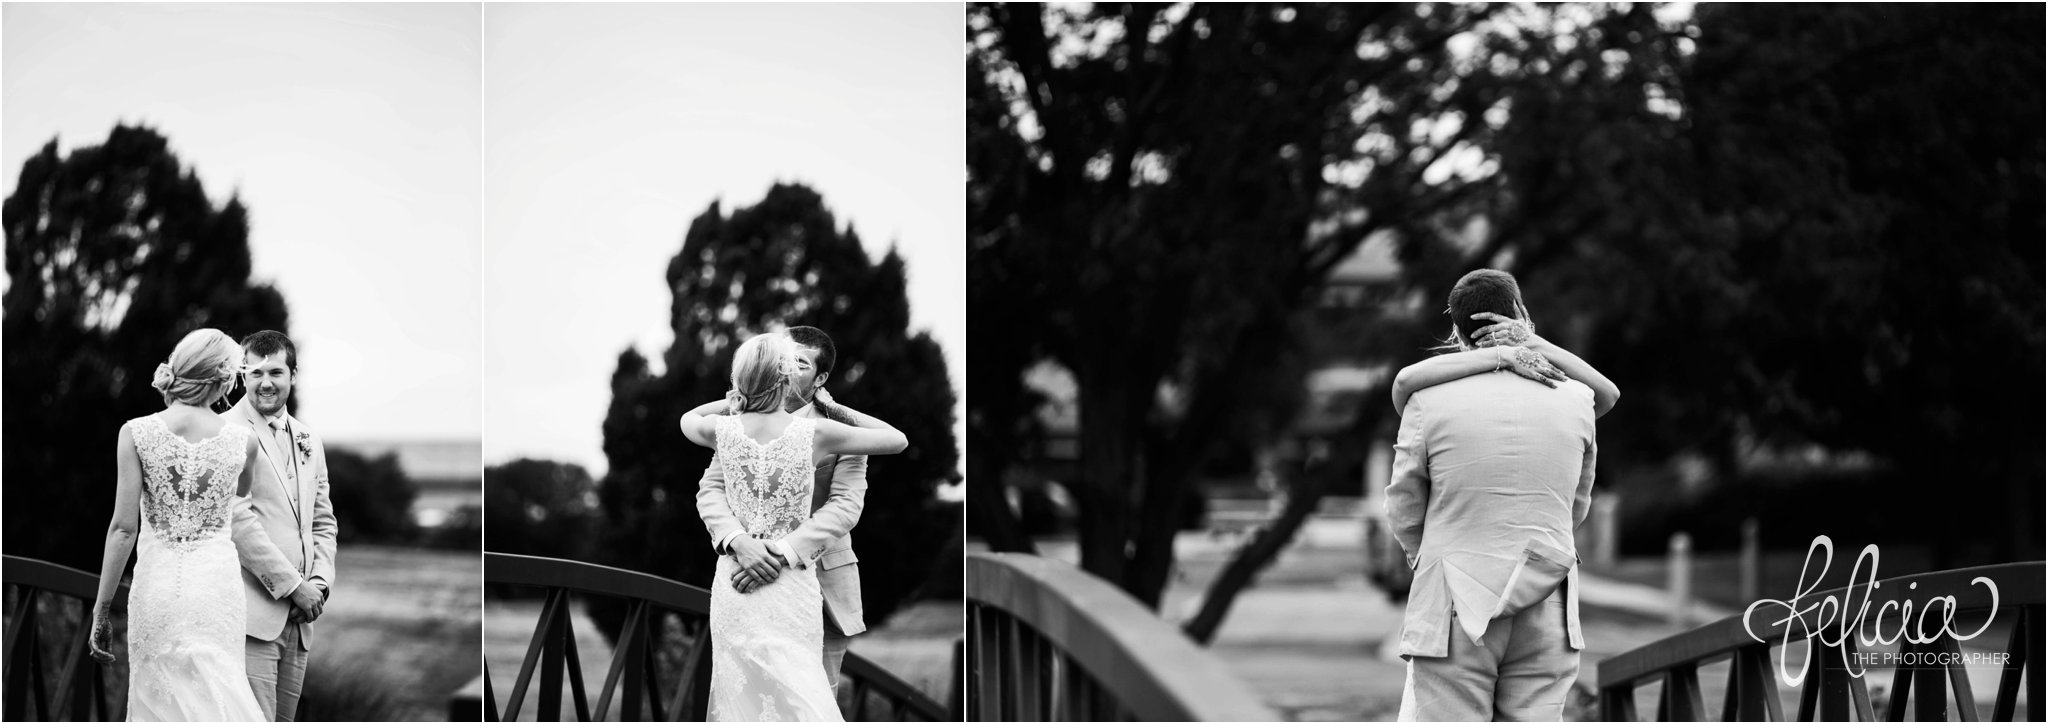 Reveal | Black and White | Felicia The Photographer | Bridge | Kansas City